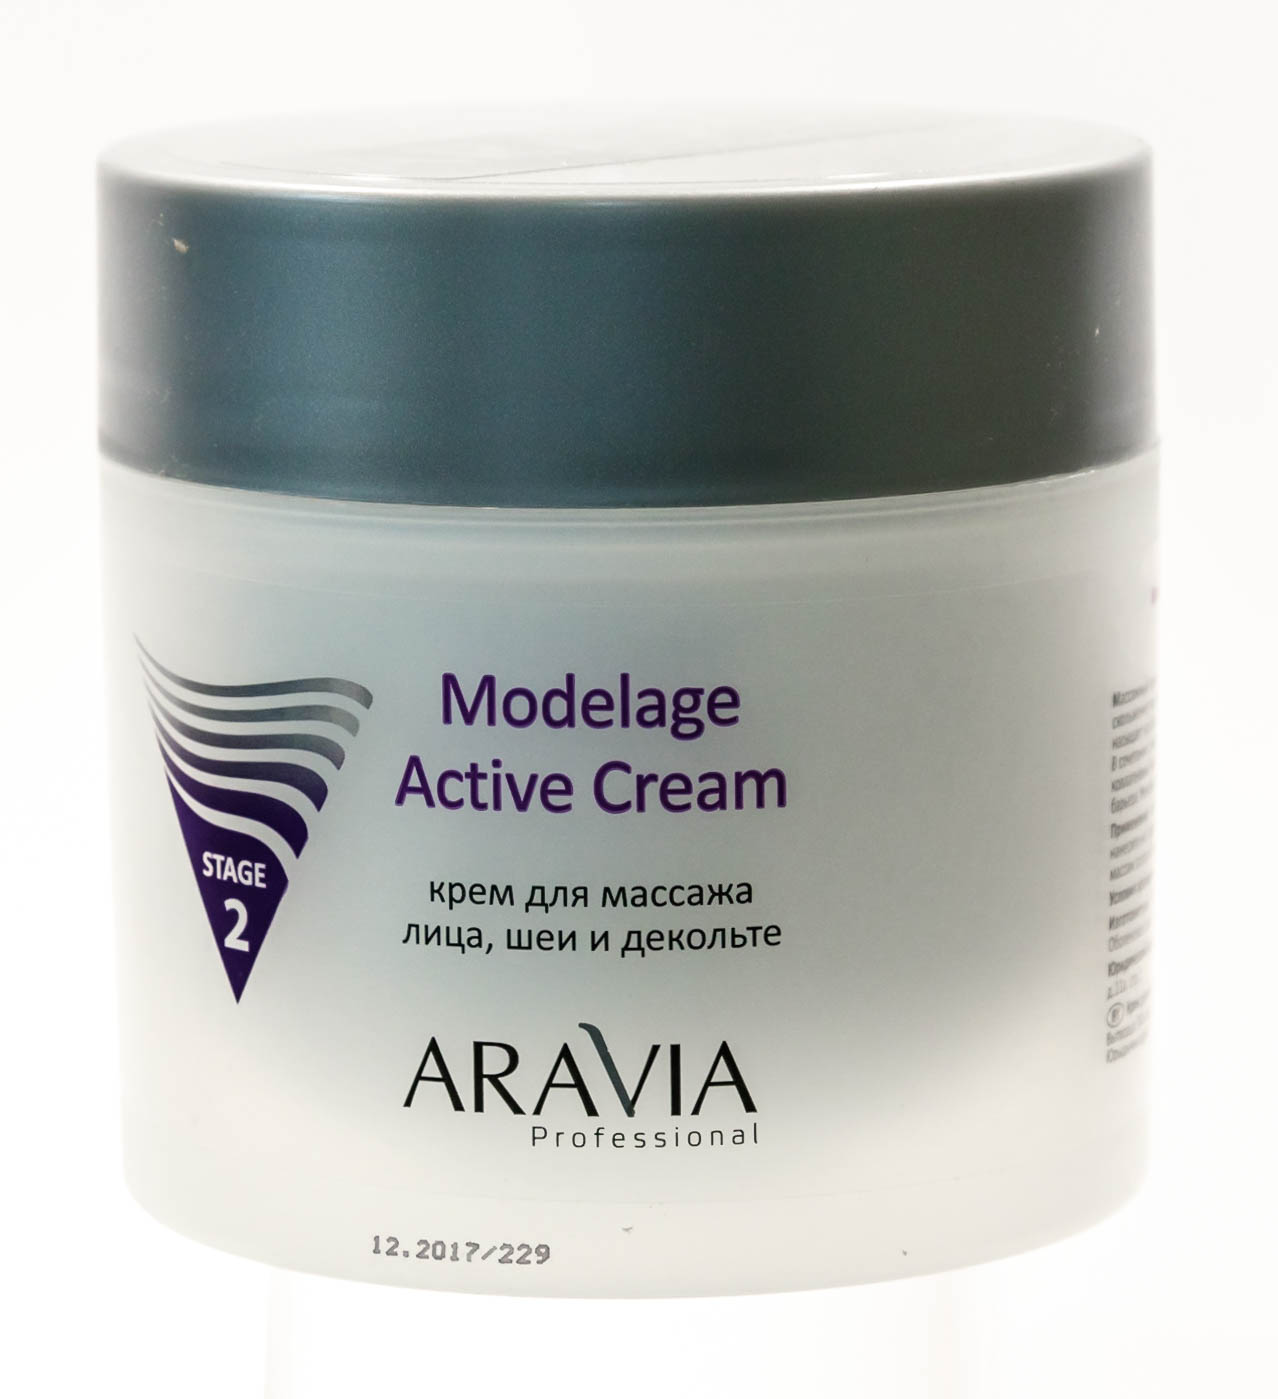 Аравия профессионал Modelage Active Cream Крем для массажа 300мл